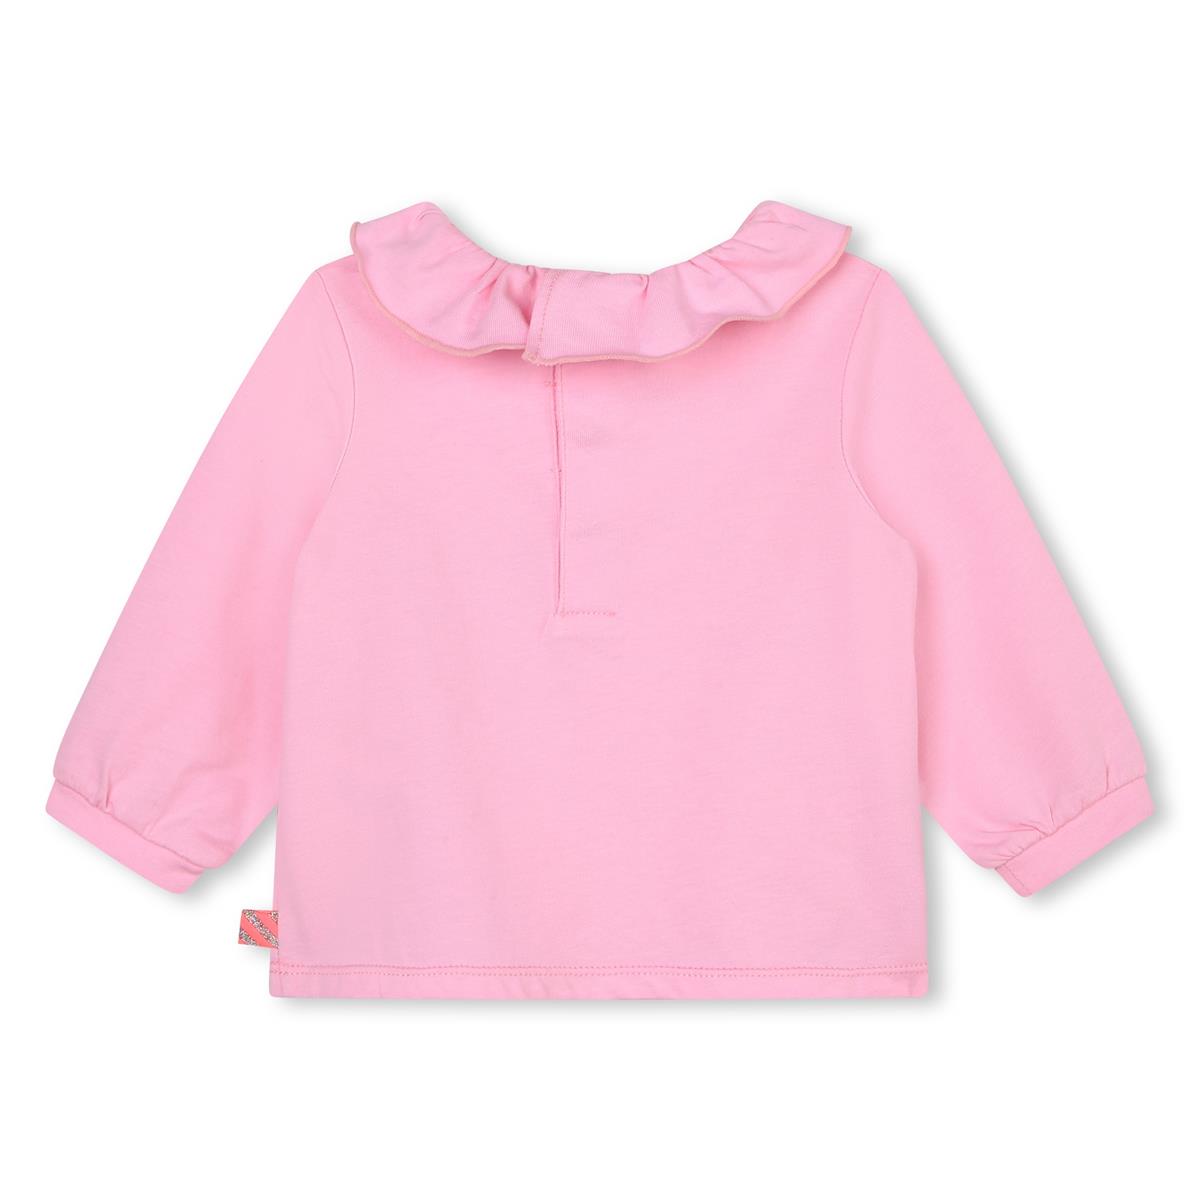 Baby Girls Pink Printed T-Shirt